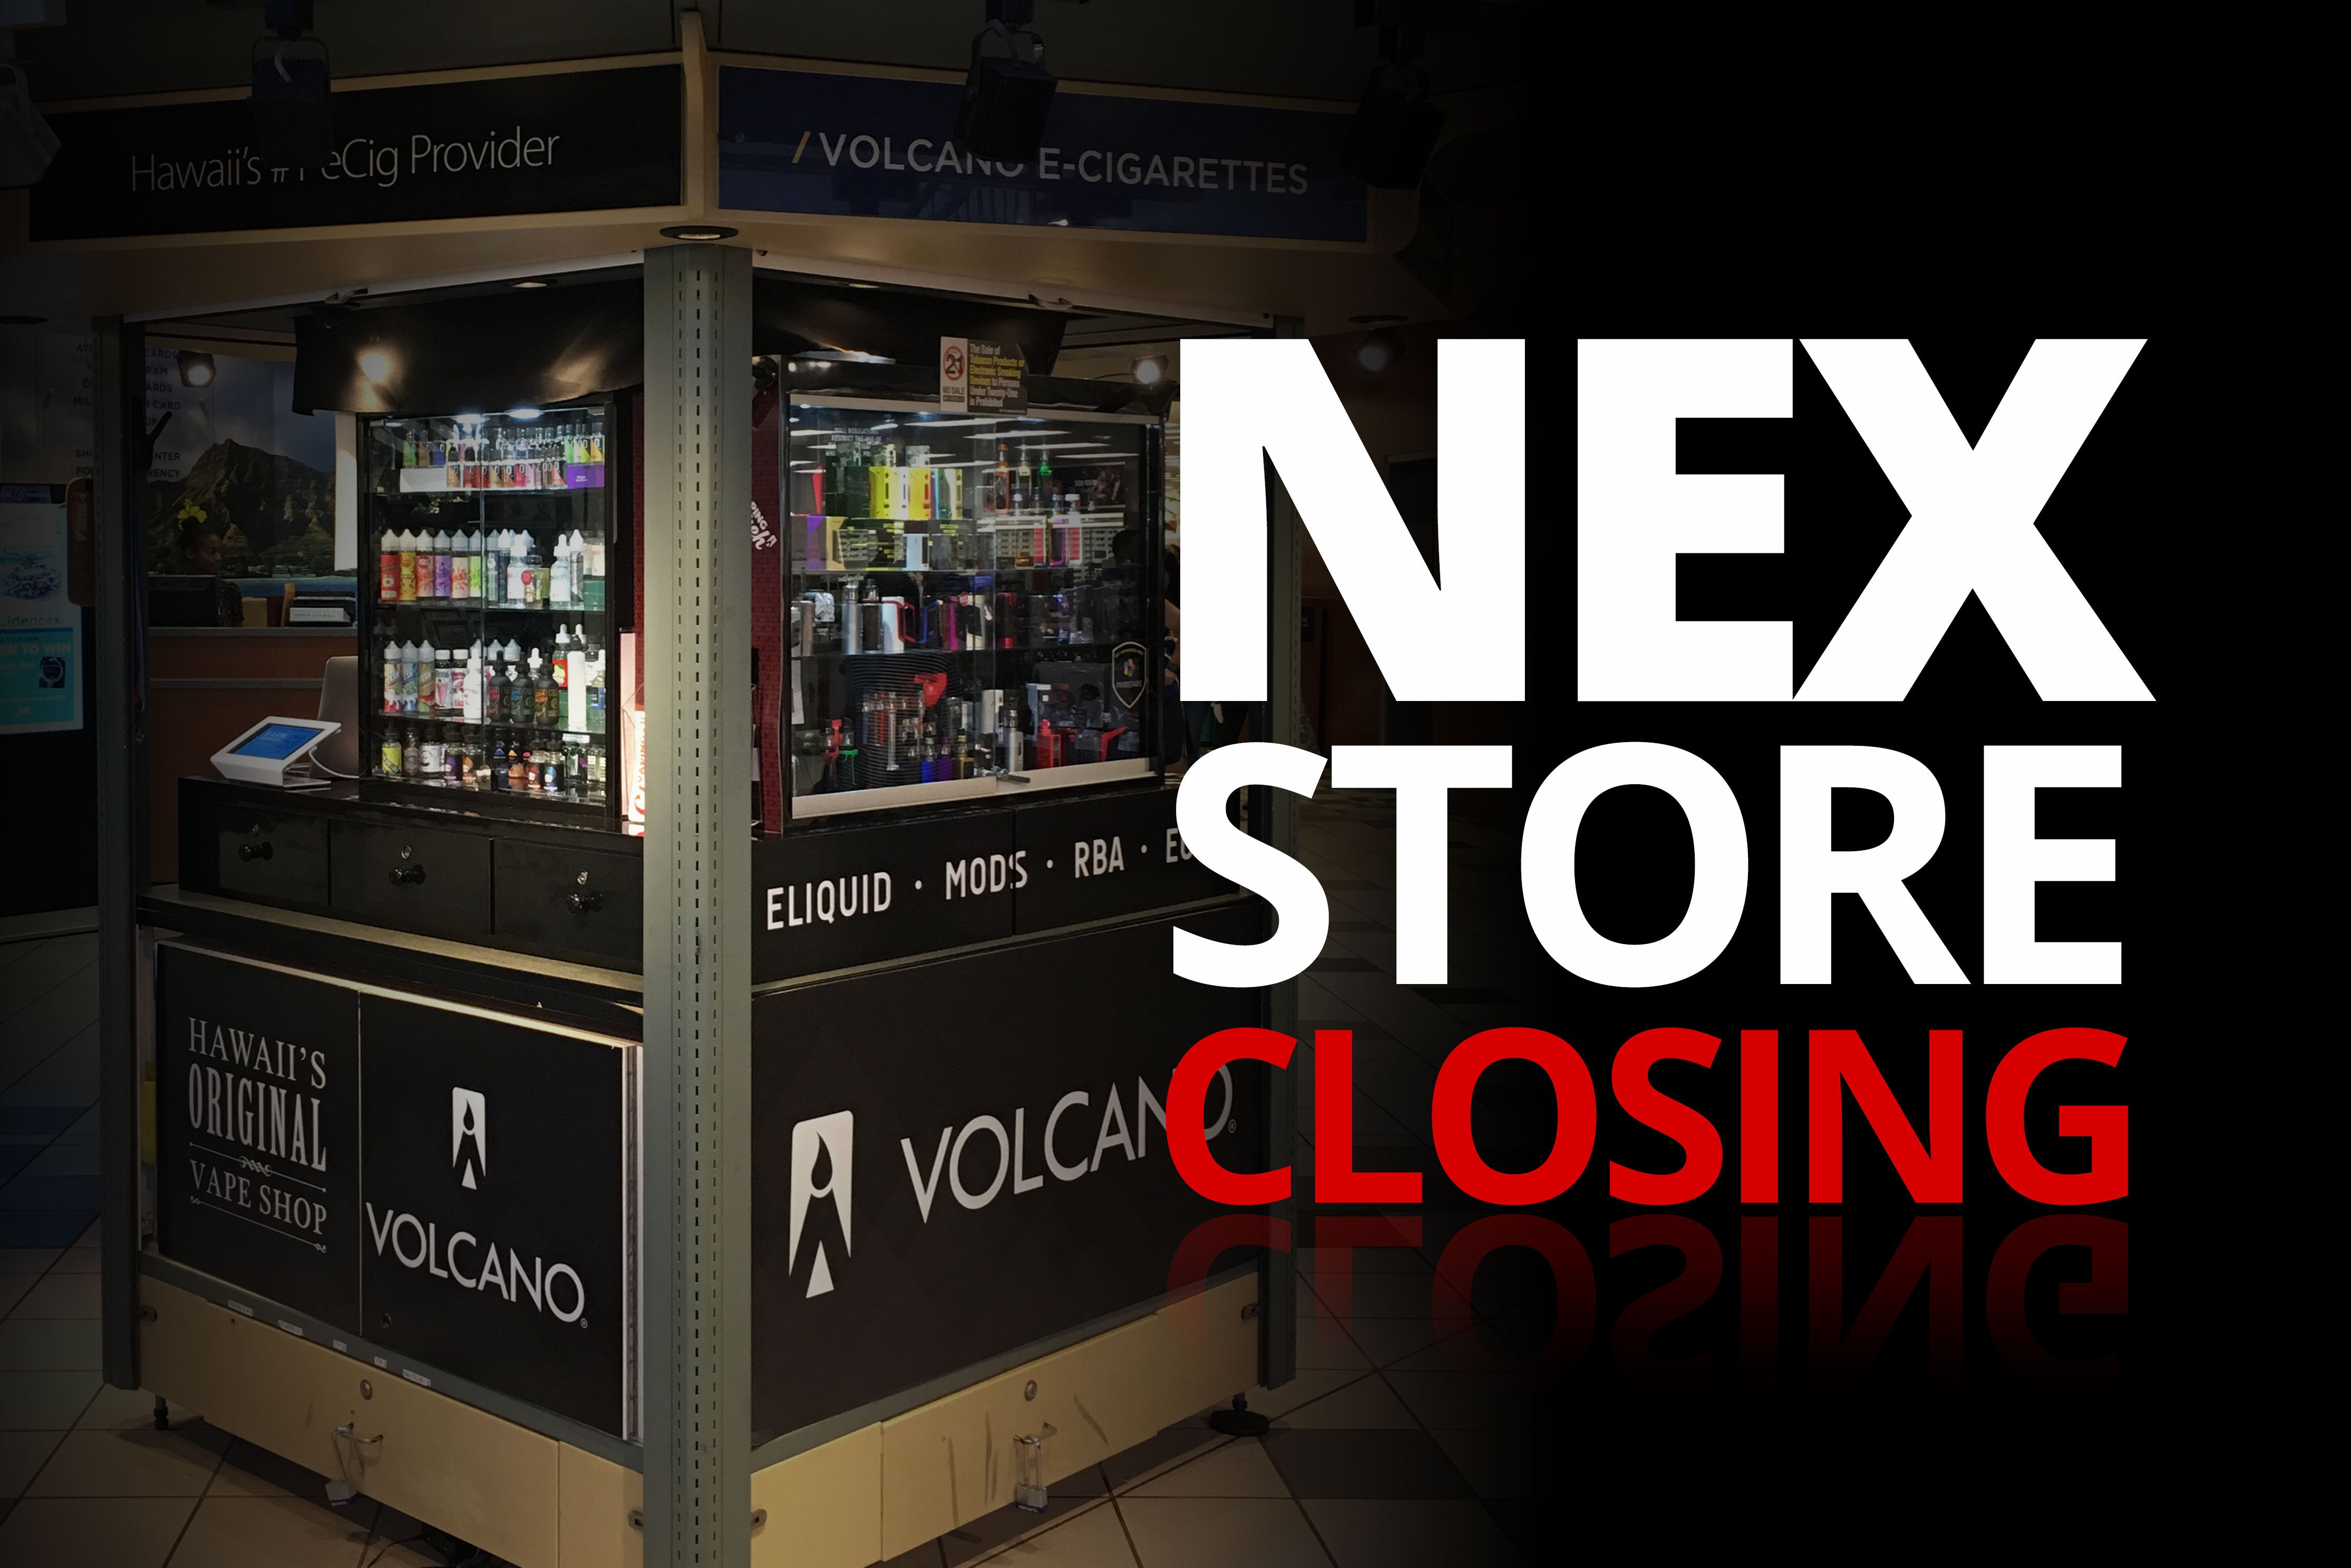 NEX store closing